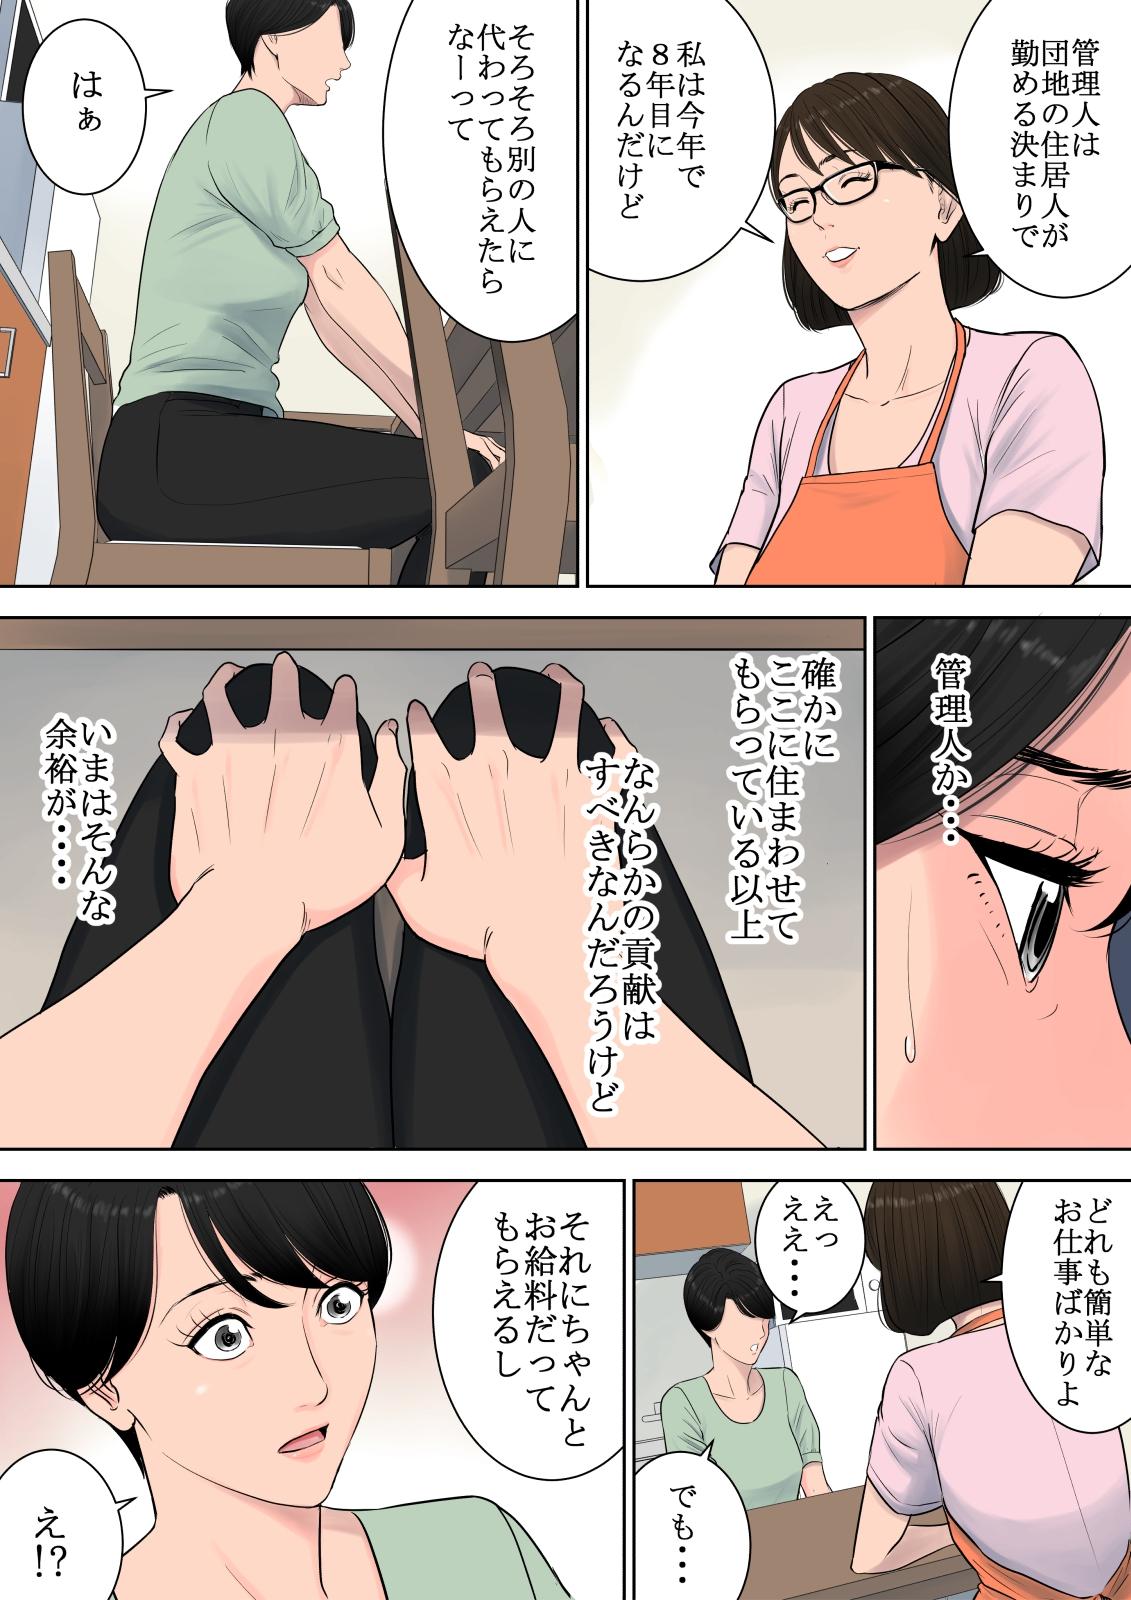 8teen Tsubakigaoka Danchi no Kanrinin Smoking - Page 7